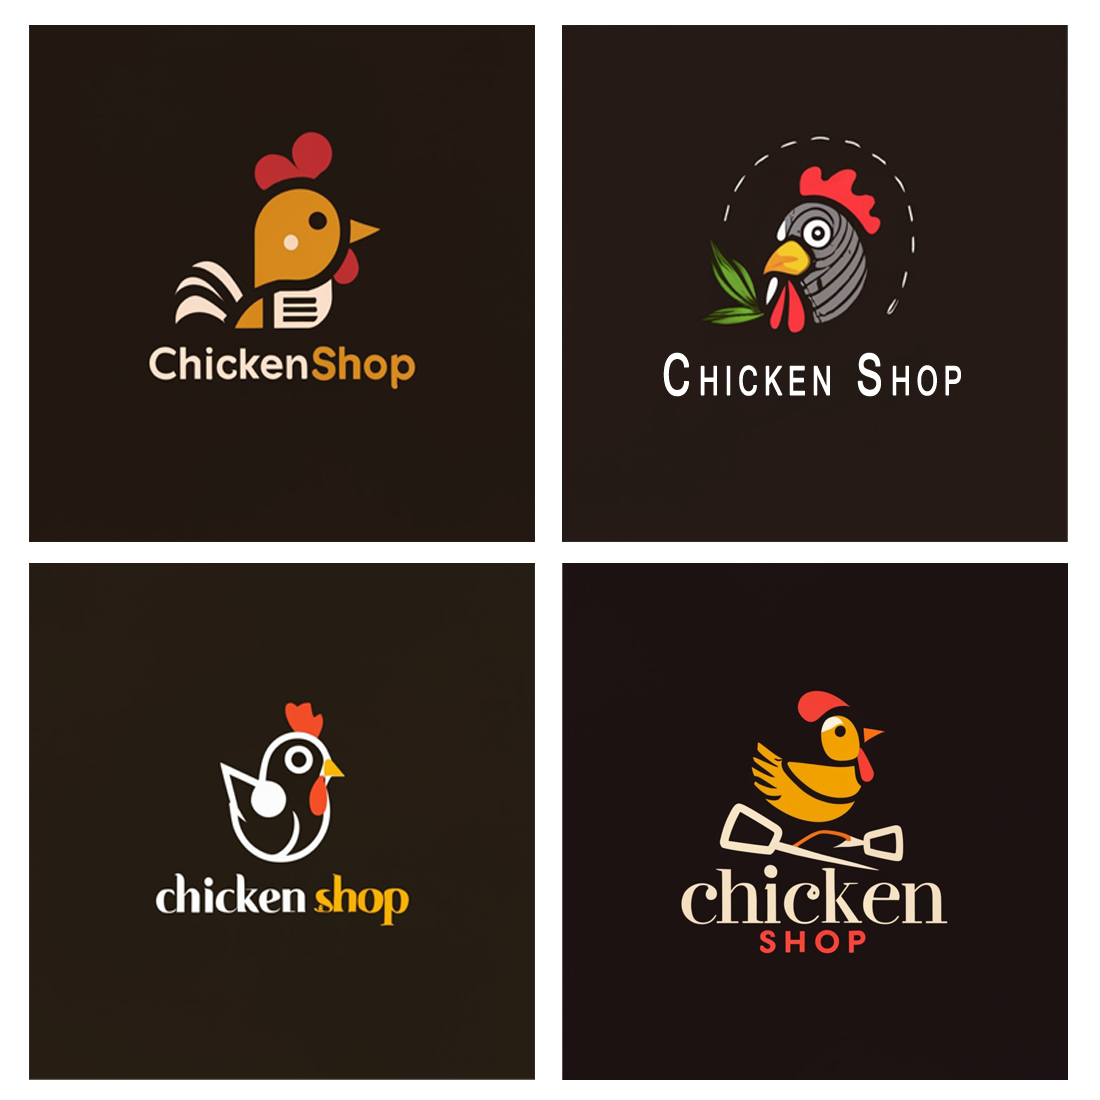 chicken shop logo copy 856